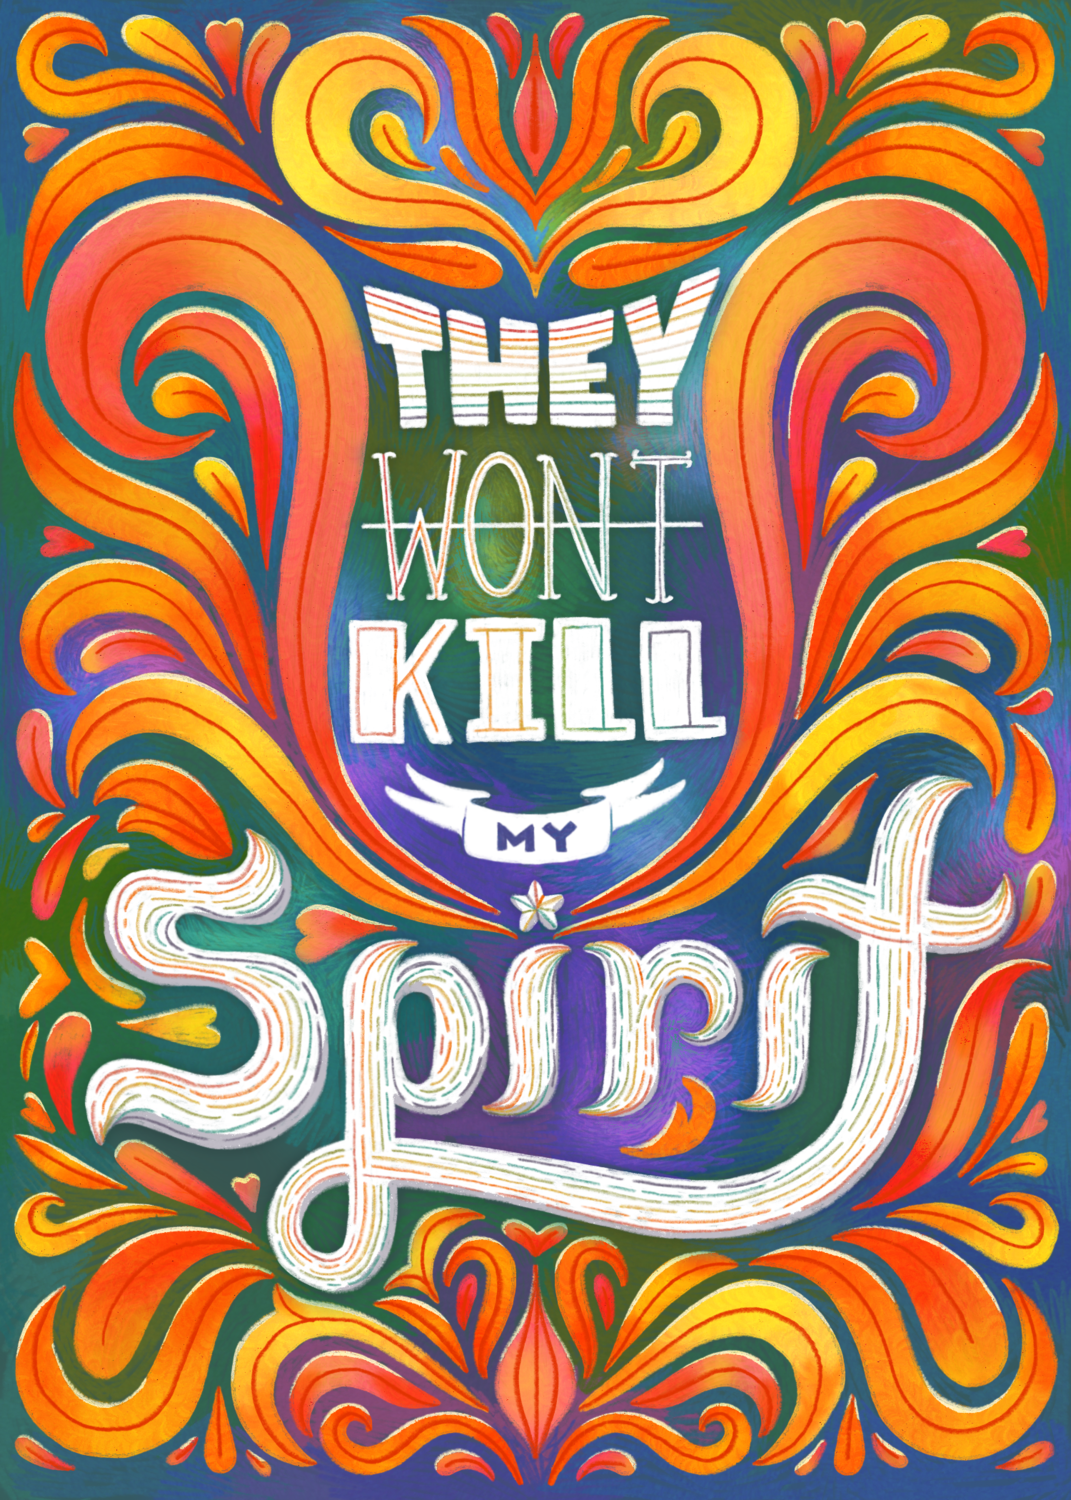 "Spirit" by Alyssa Chambers